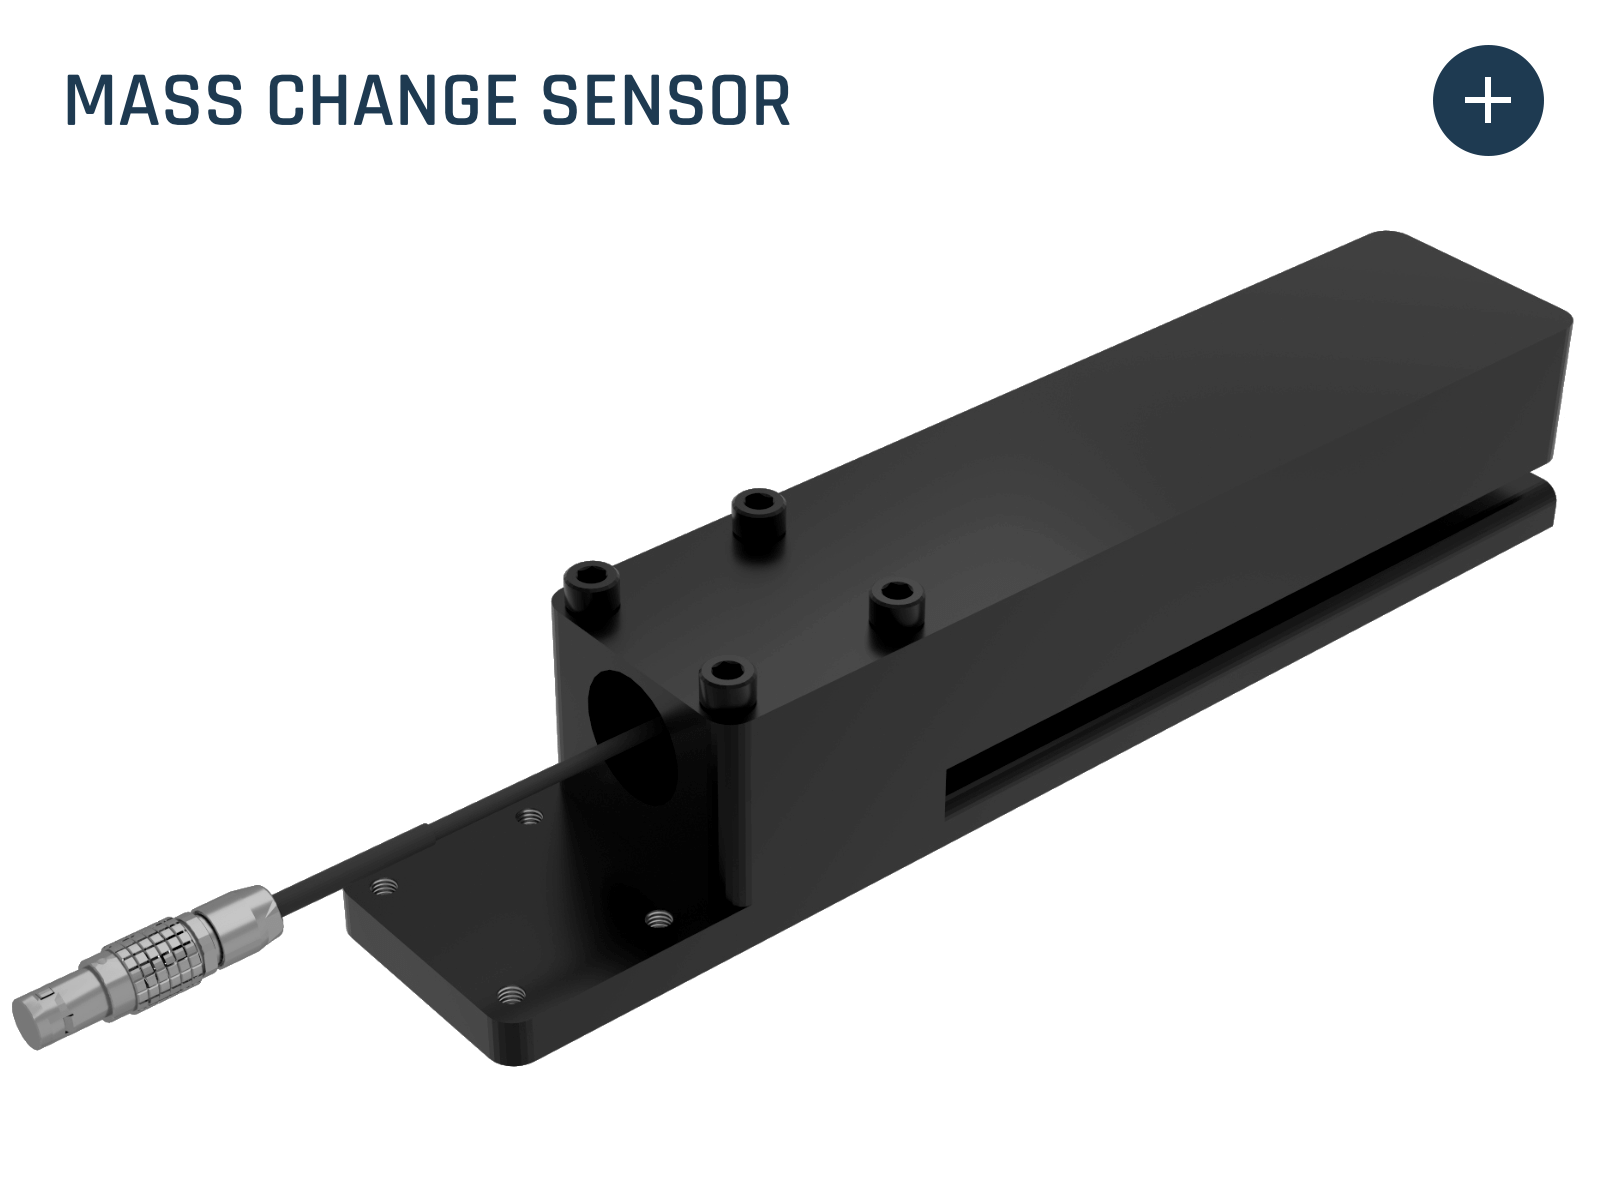 Clique aqui para saber mais sobre o sensor de mudança de massa